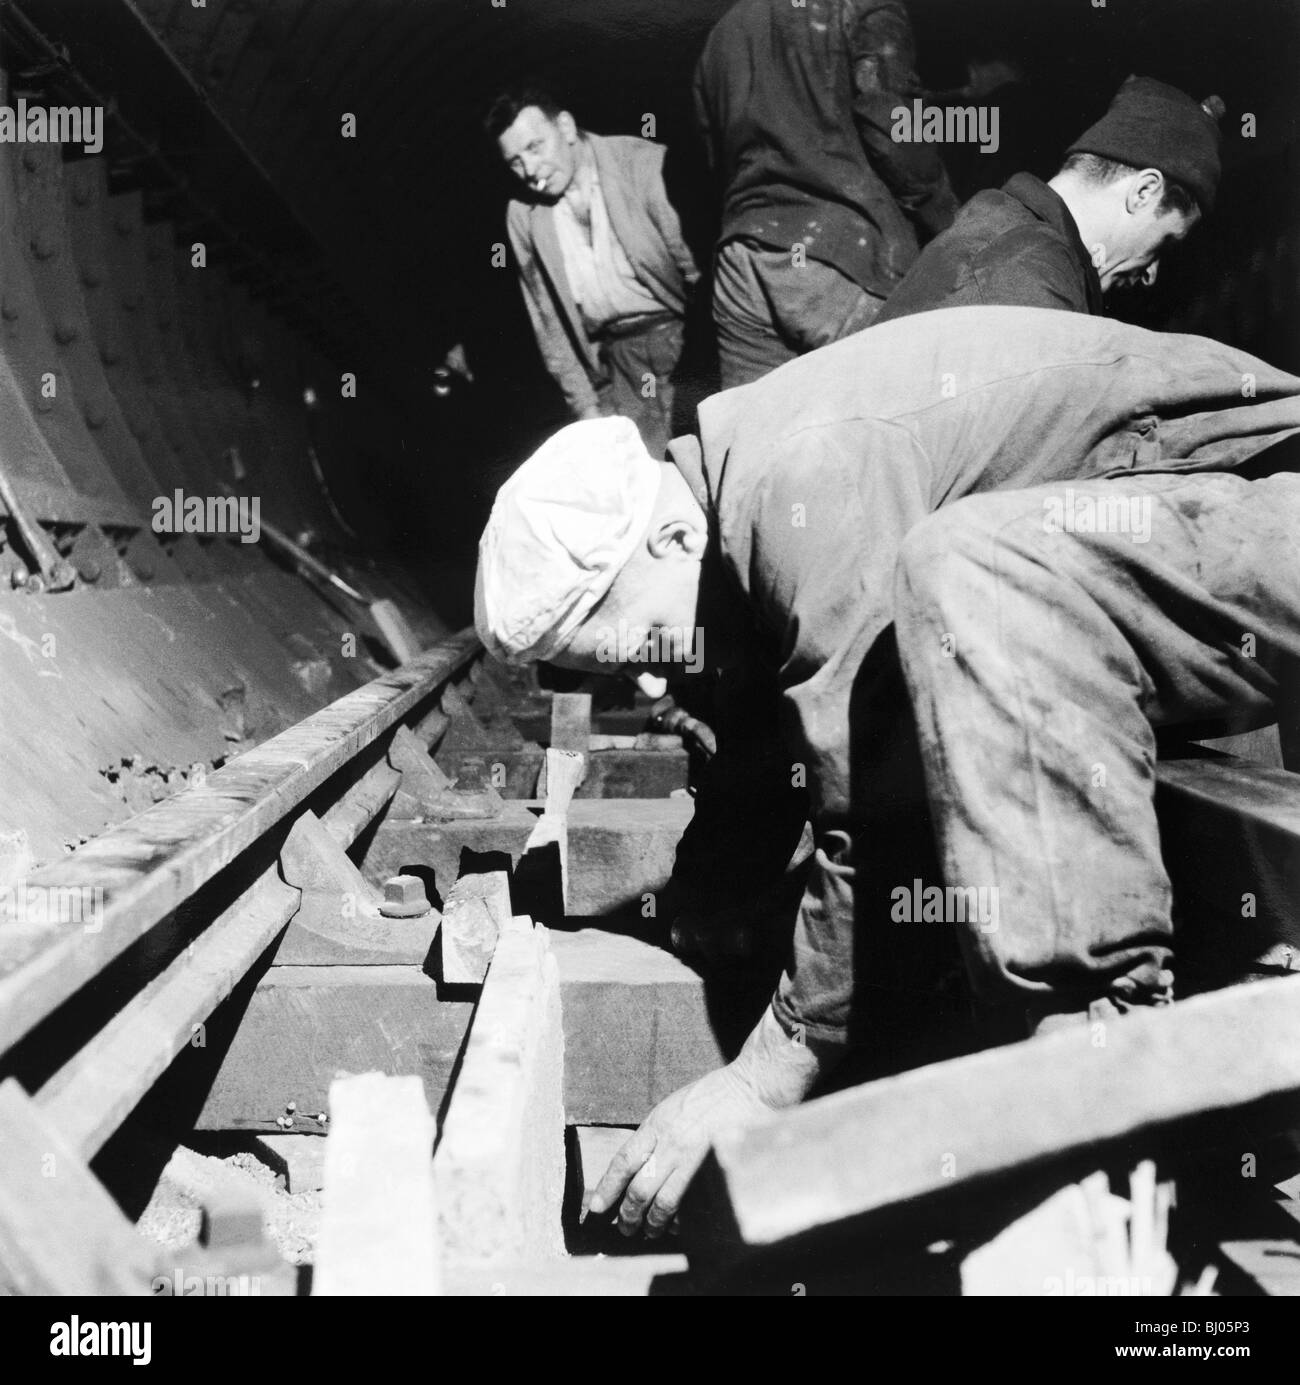 Repairing underground train tracks, London, 1955. Artist: Henry Grant Stock Photo